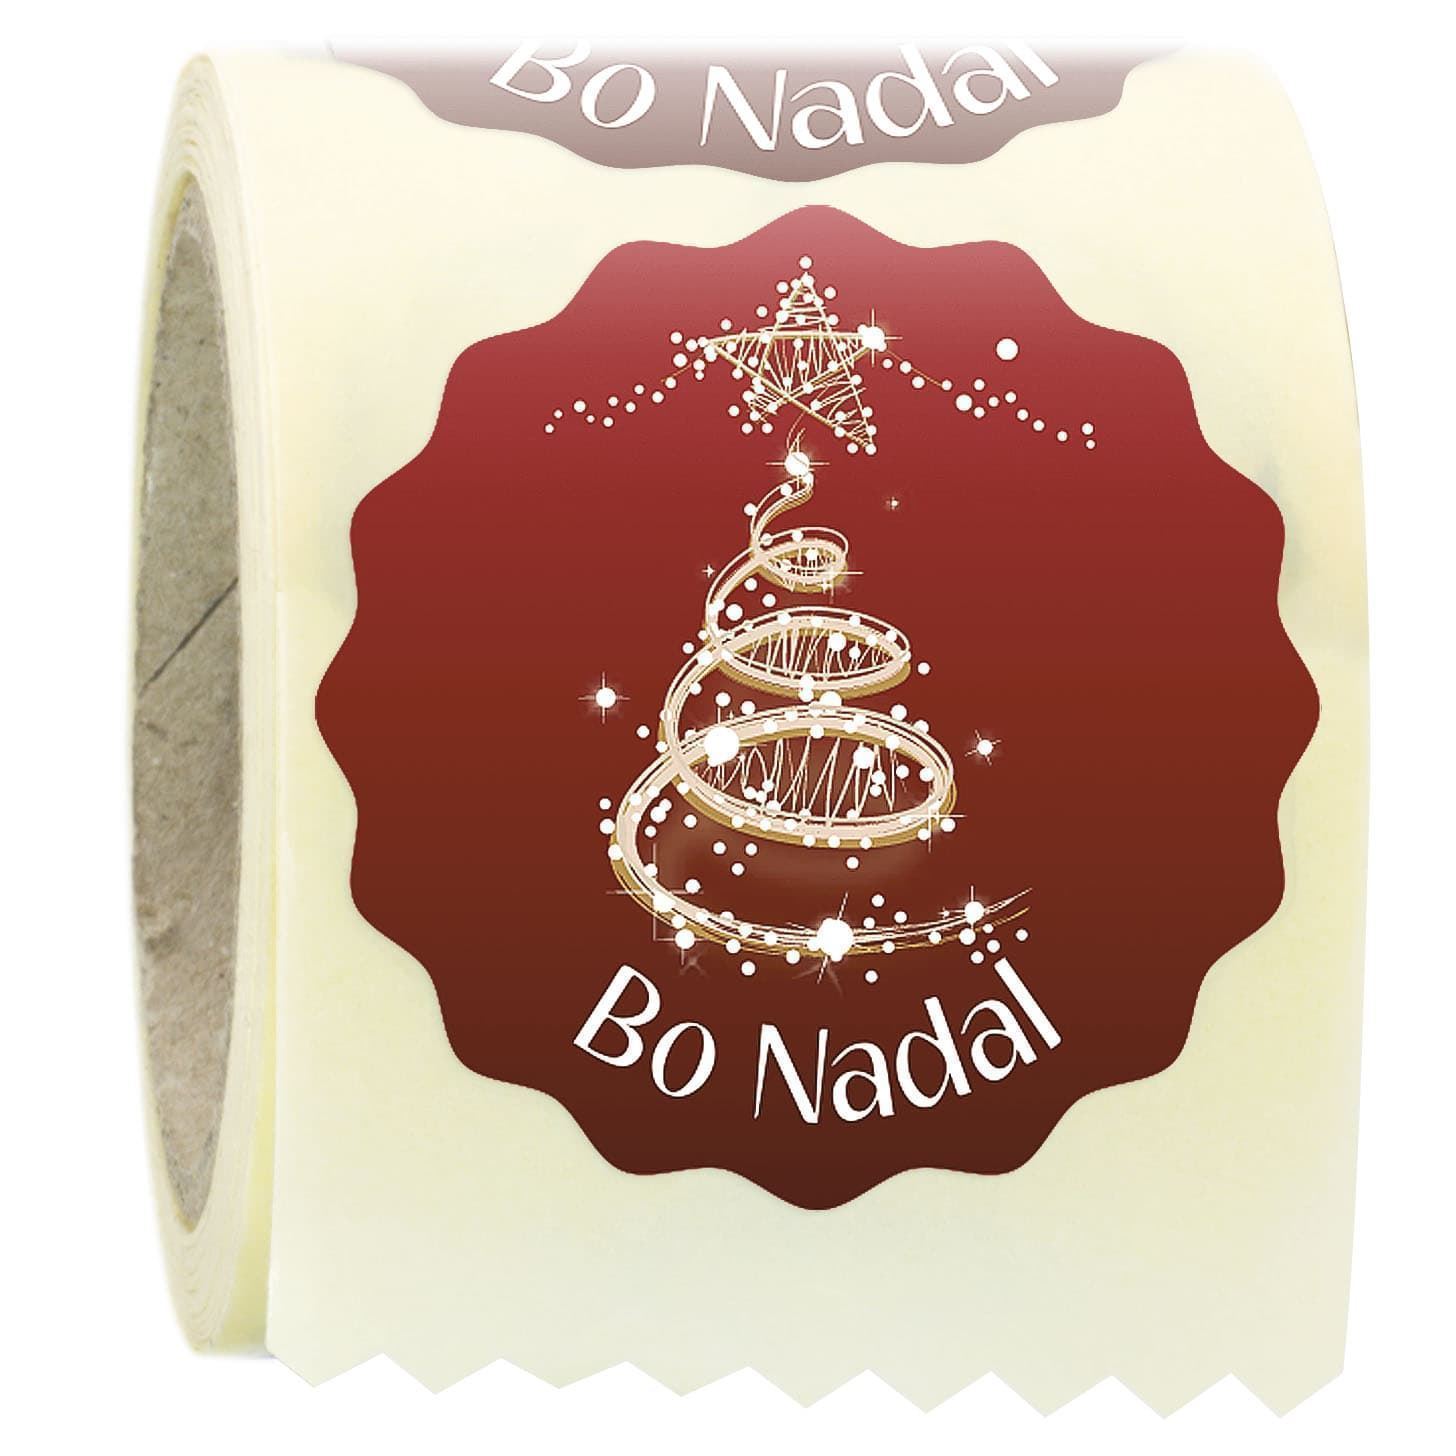 N16 - Etiquetas en gallego "Bo Nadal" - Rollo de 250 ud - 42 mm Ø - Imagen 1